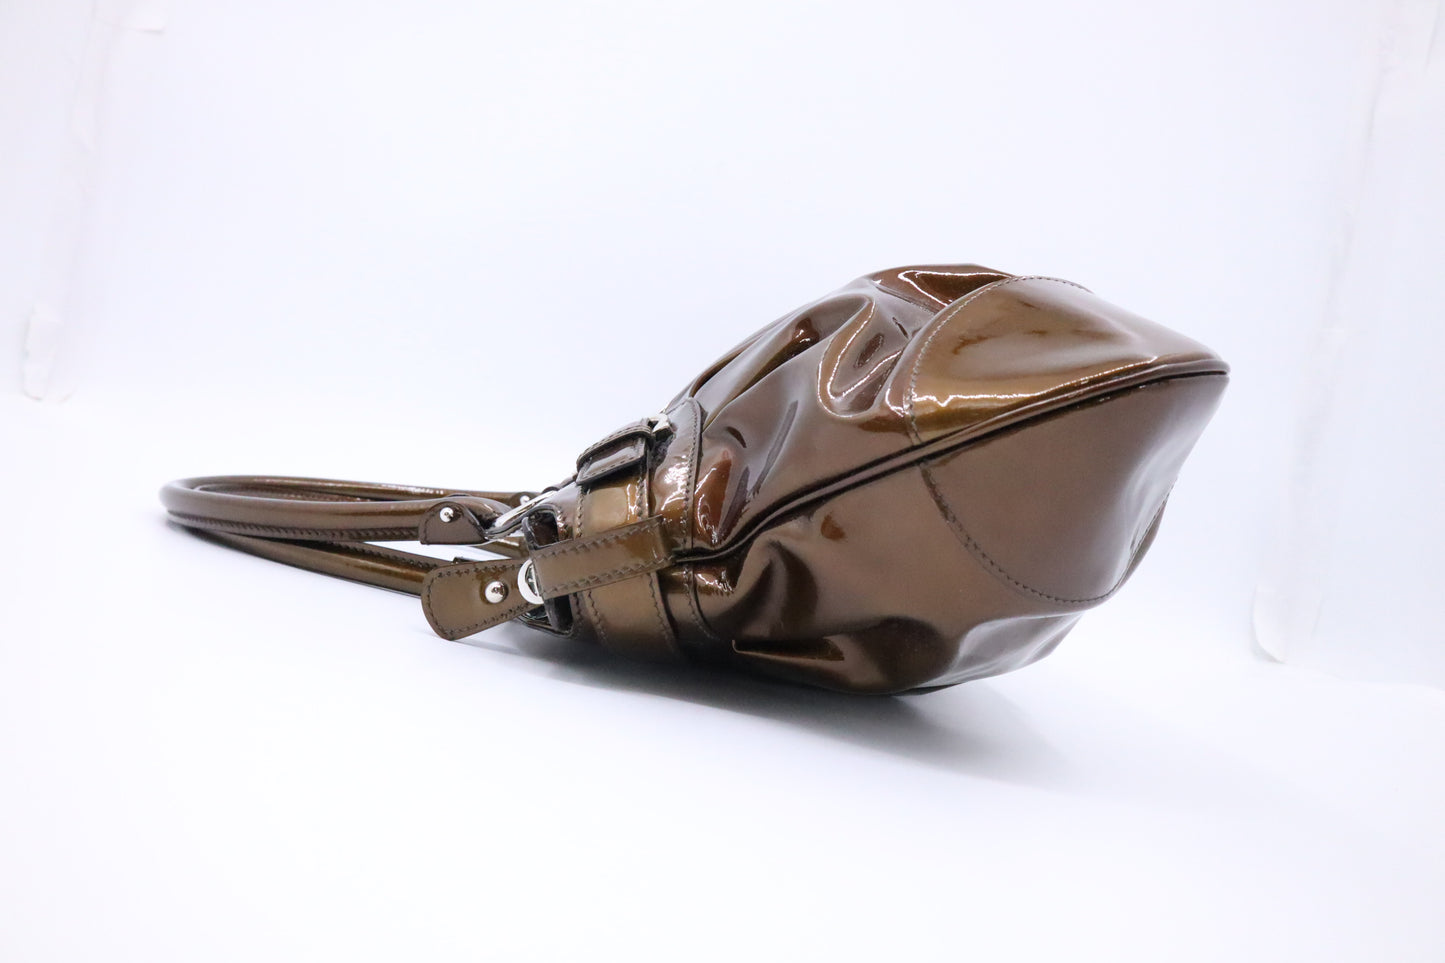 Ferragamo Marisa Handbag in Bronze Patent Leather